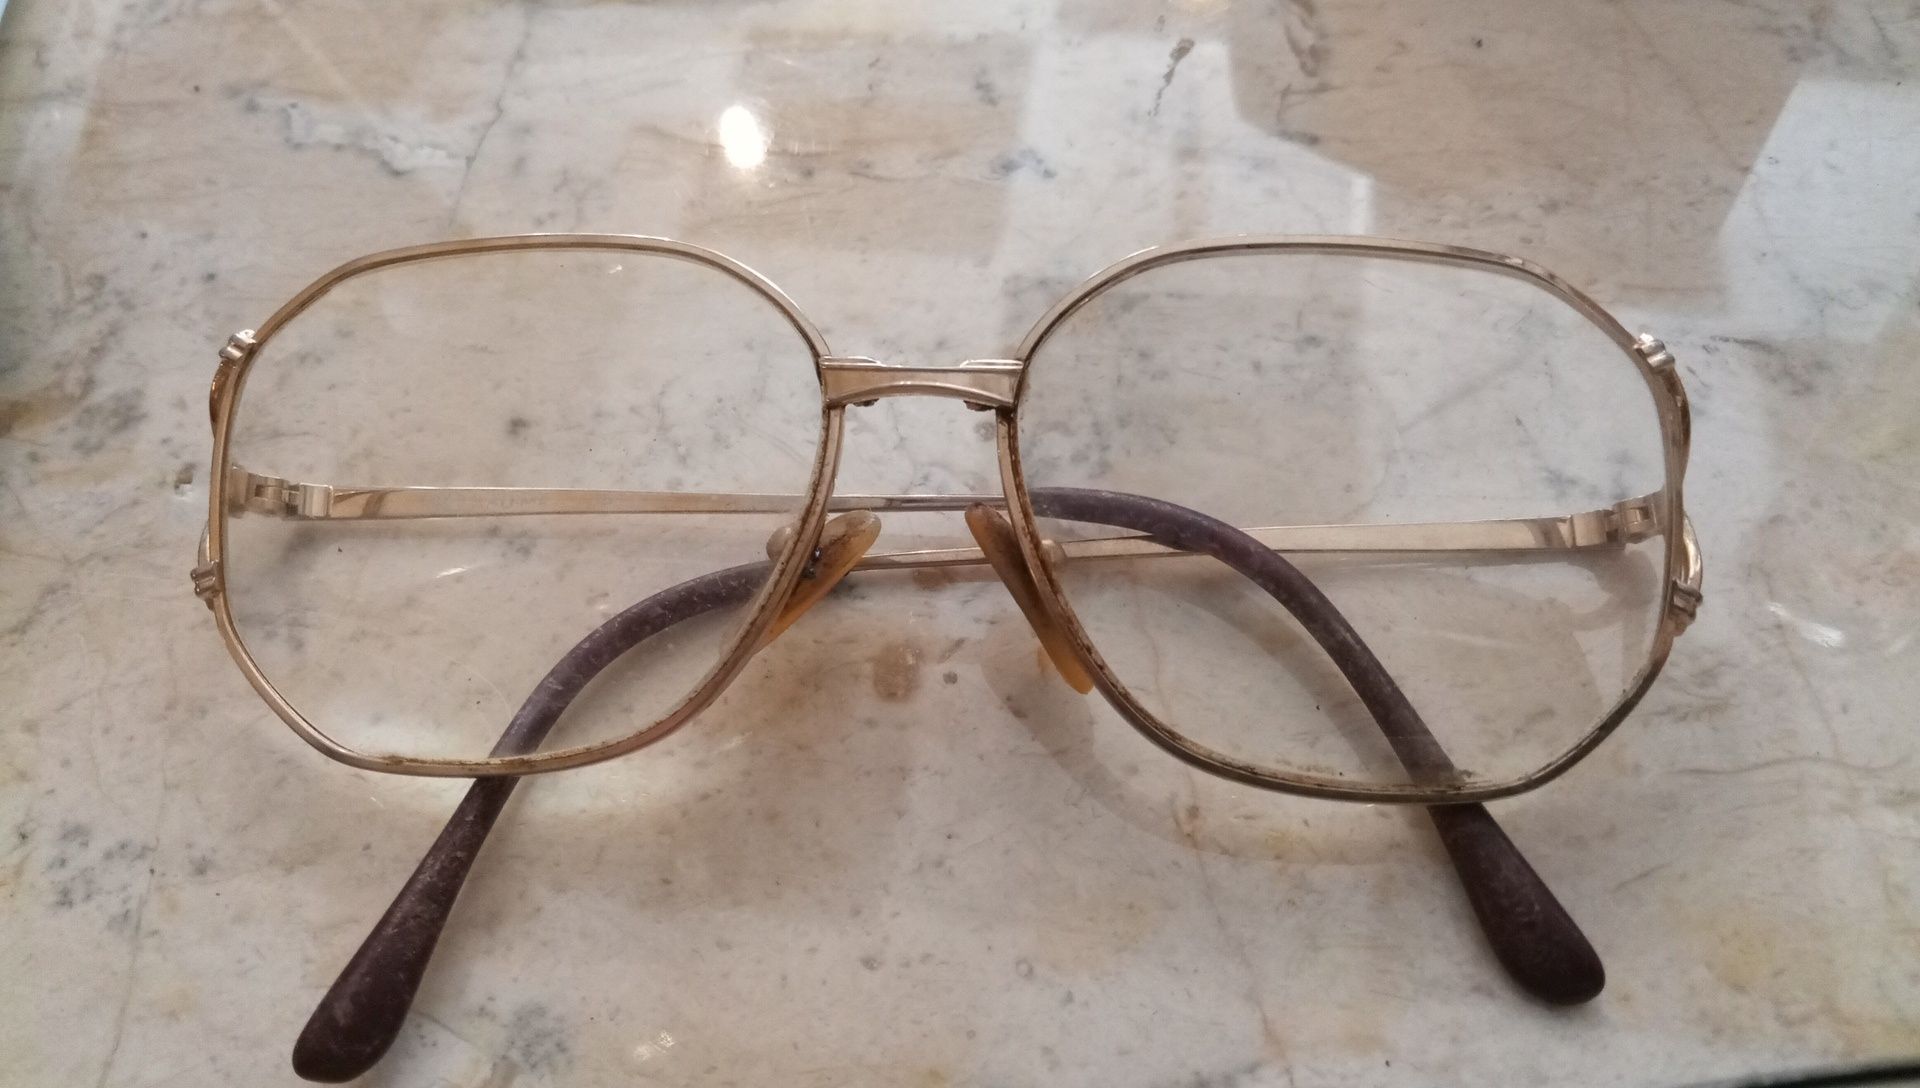 Oculos antigos com lentes graduadas